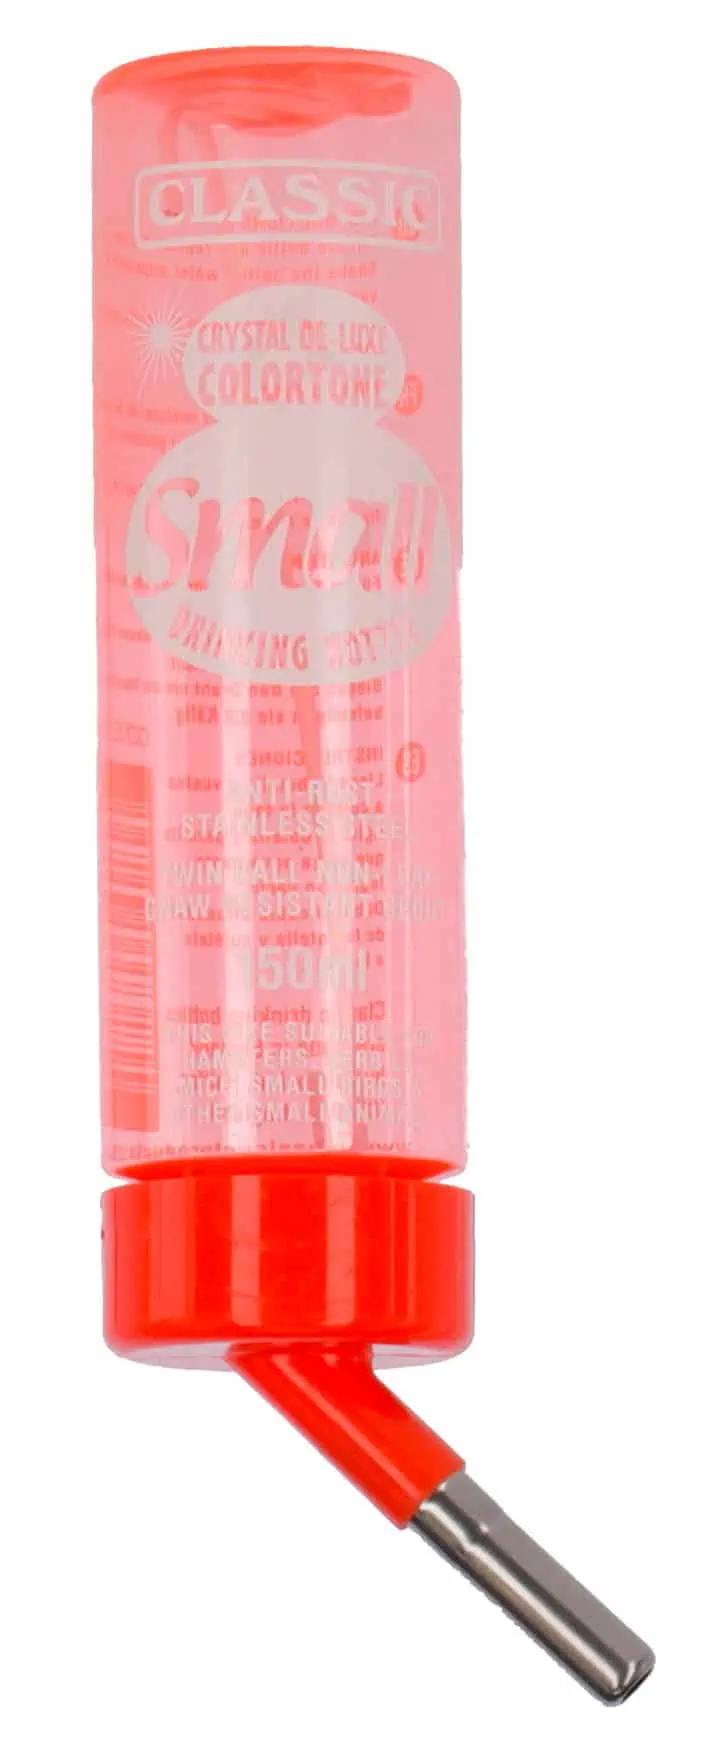 Sticla de baut pentru rozatoare Classic de Luxe colorata